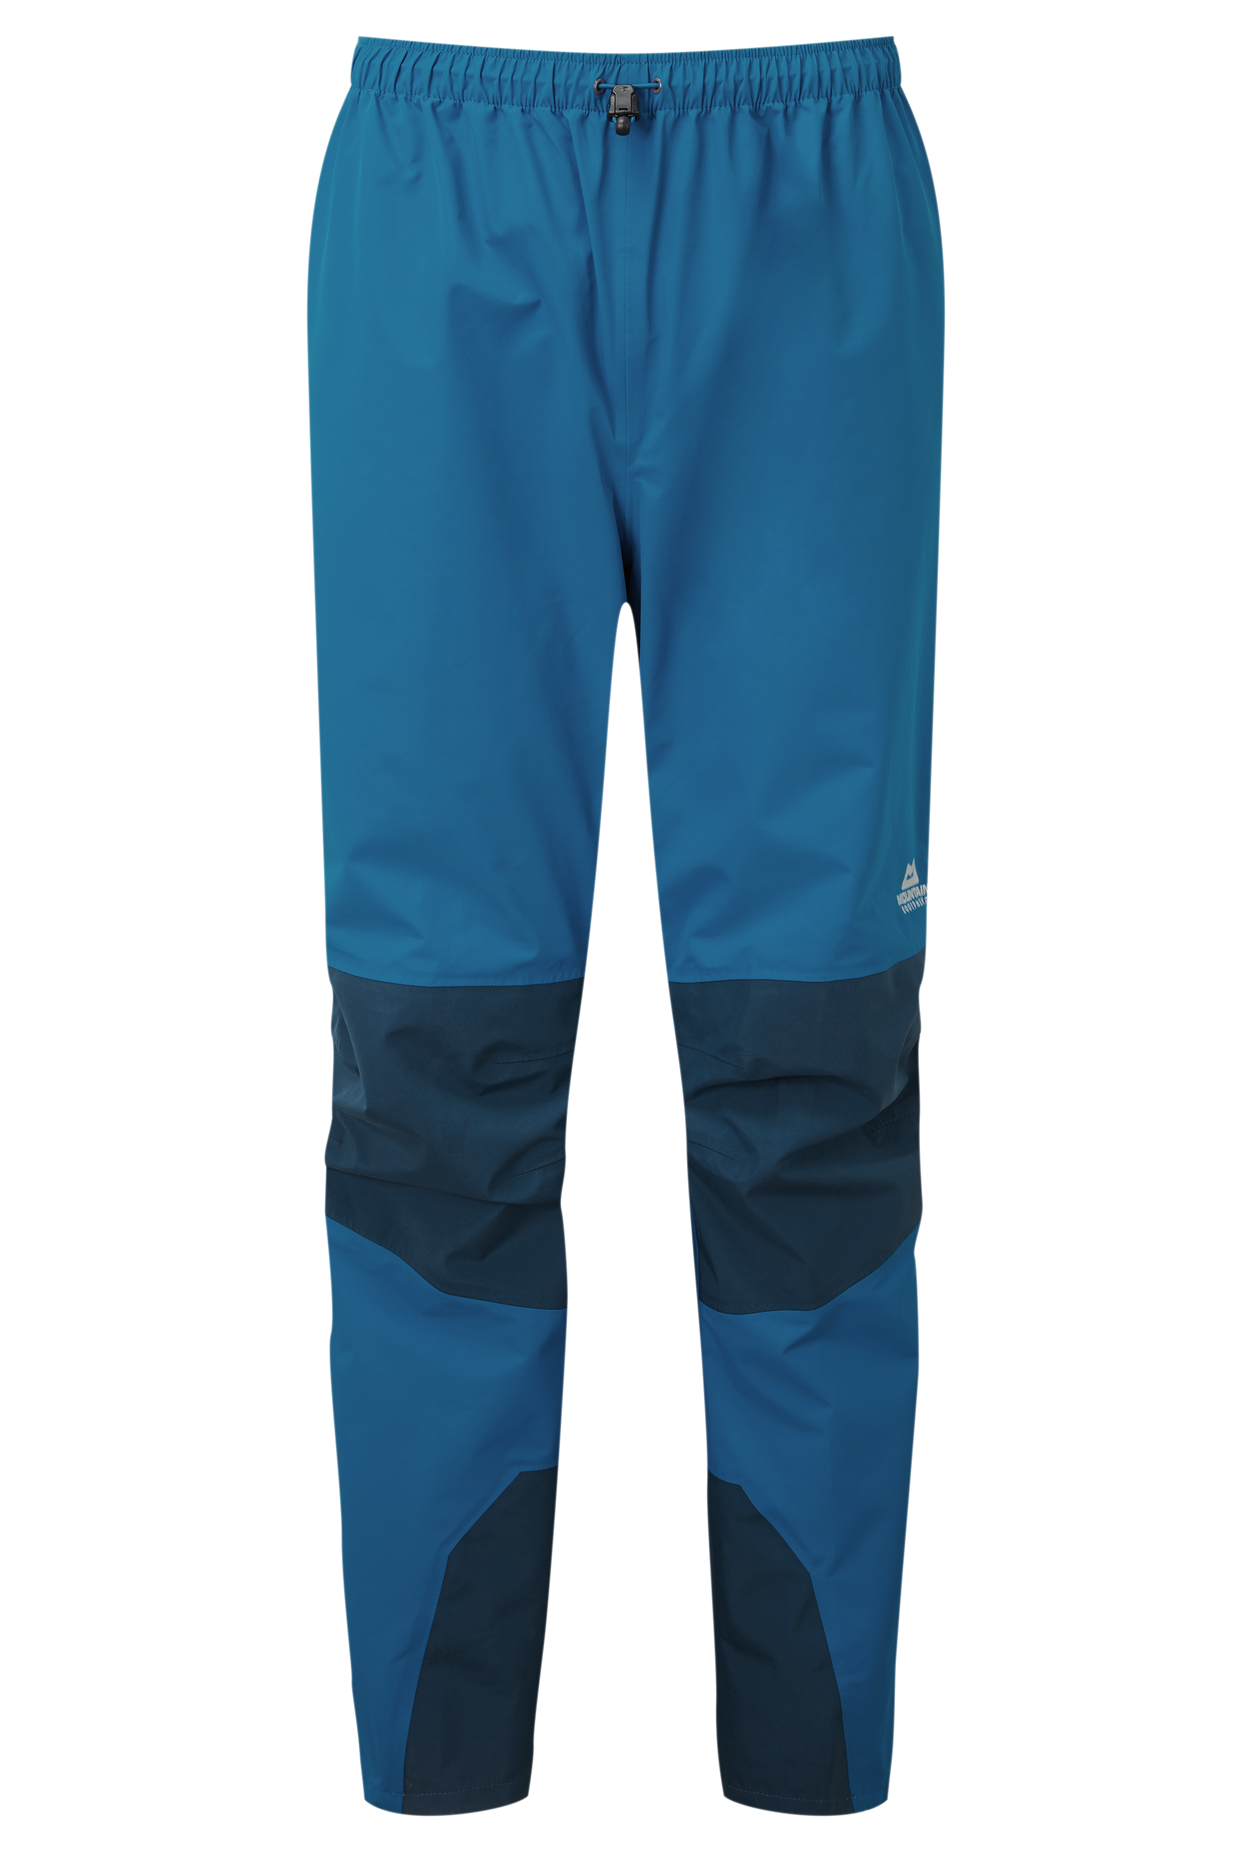 Mountain Equipment pánské nepromokavé kalhoty Saltoro Pant - zkrácené Barva: Mykonos/Majolica, Velikost: L